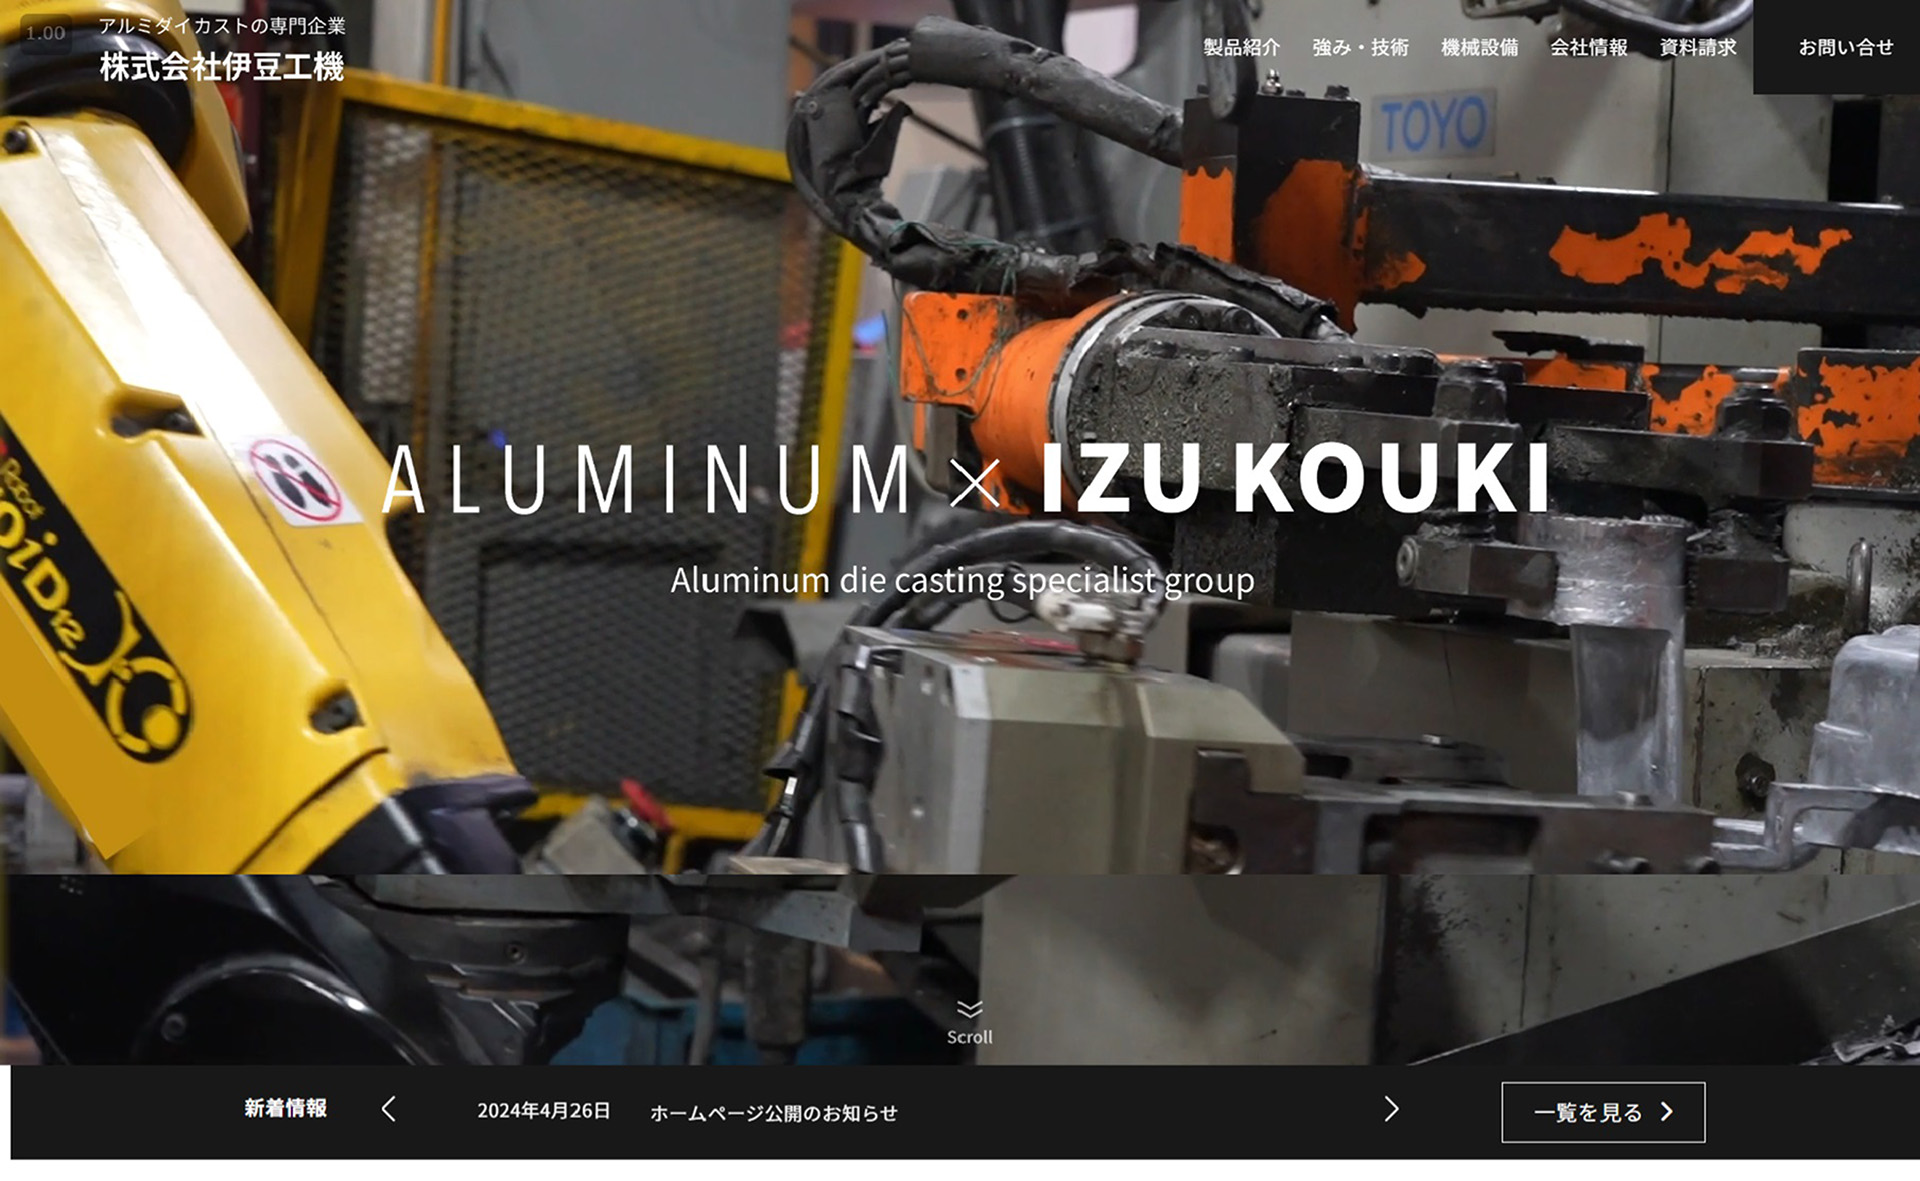 高品質アルミダイカスト製品製造の強みをオンラインで発信する株式会社伊豆工機様のWebサイト制作